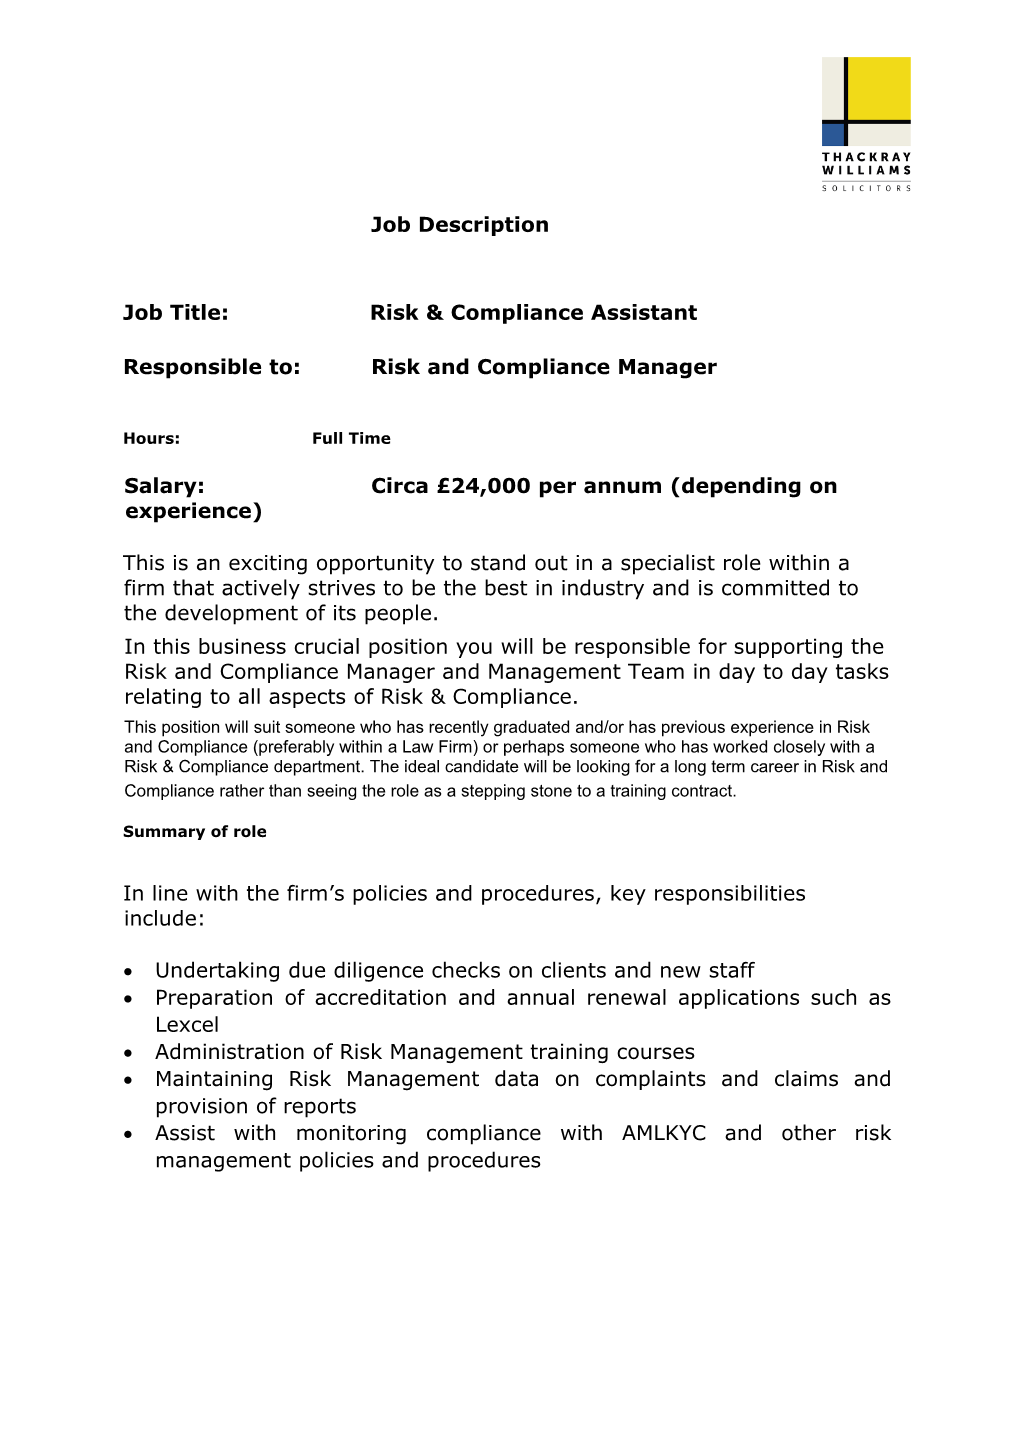 Job Title: Risk & Compliance Assistant